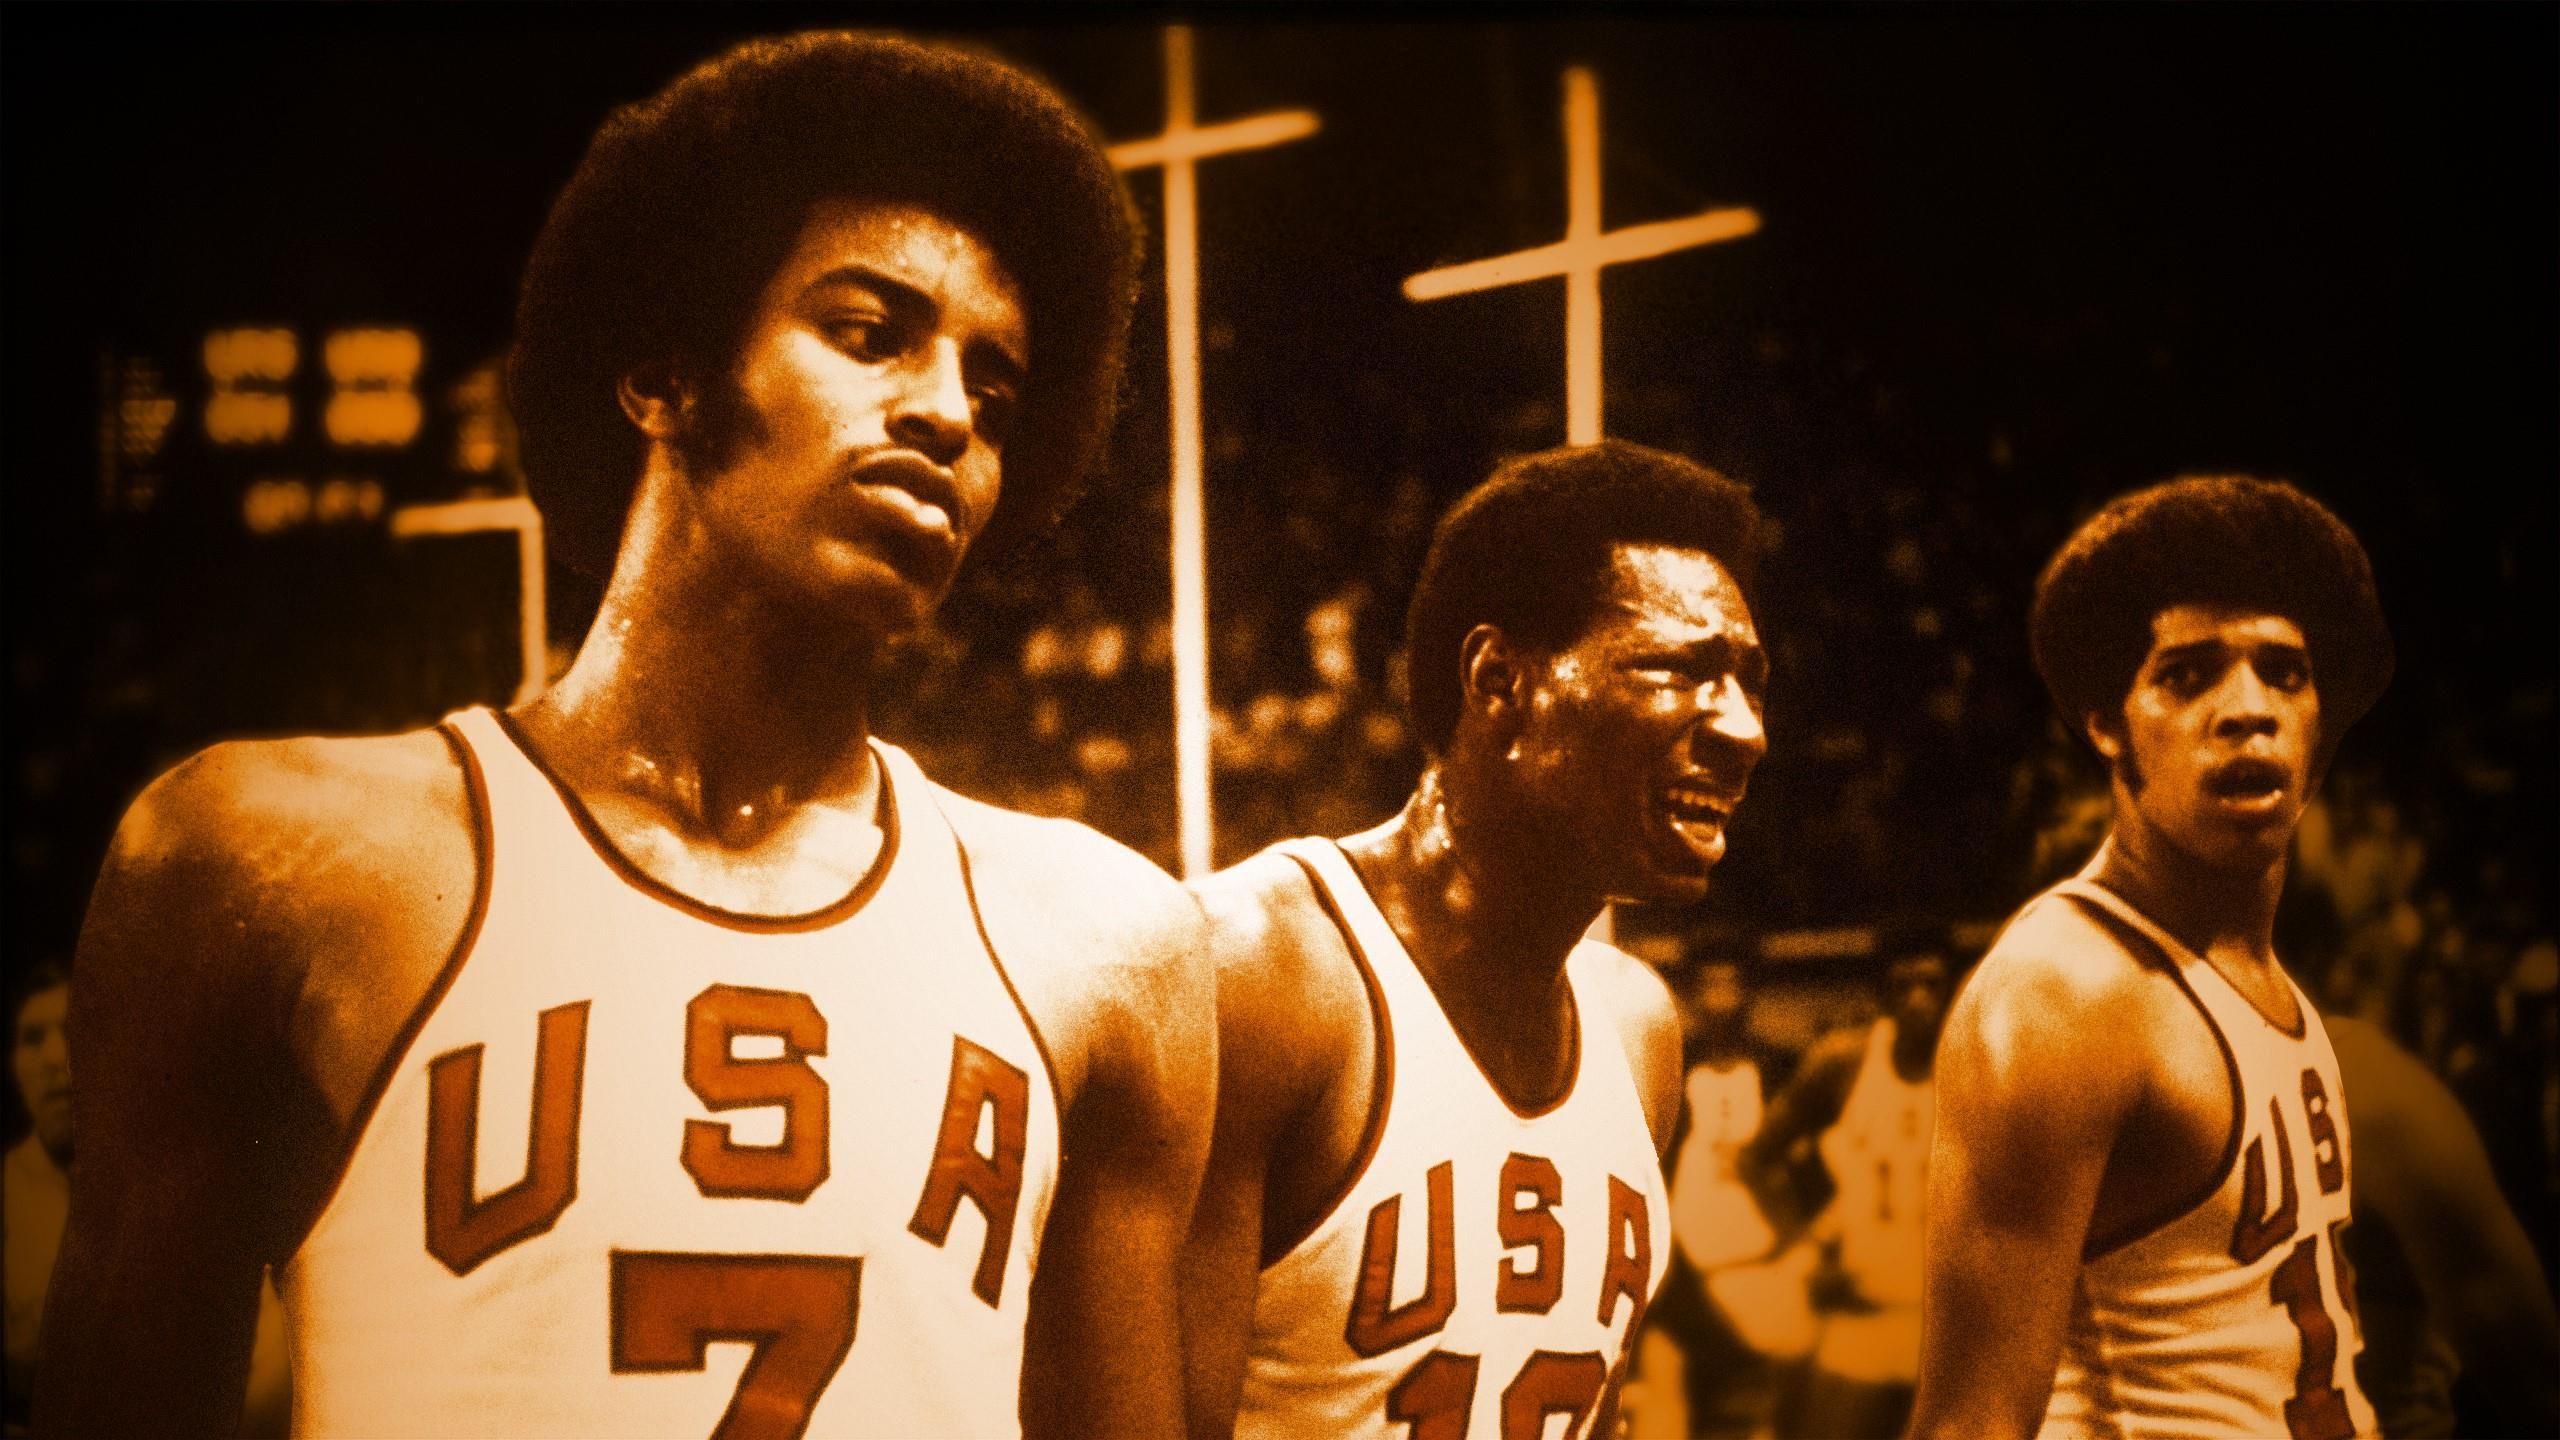 Матч баскетбола 1972. Мюнхен 1972 баскетбол. Сборная США 1972 баскетбол. Баскетбол 1972 финал СССР США.